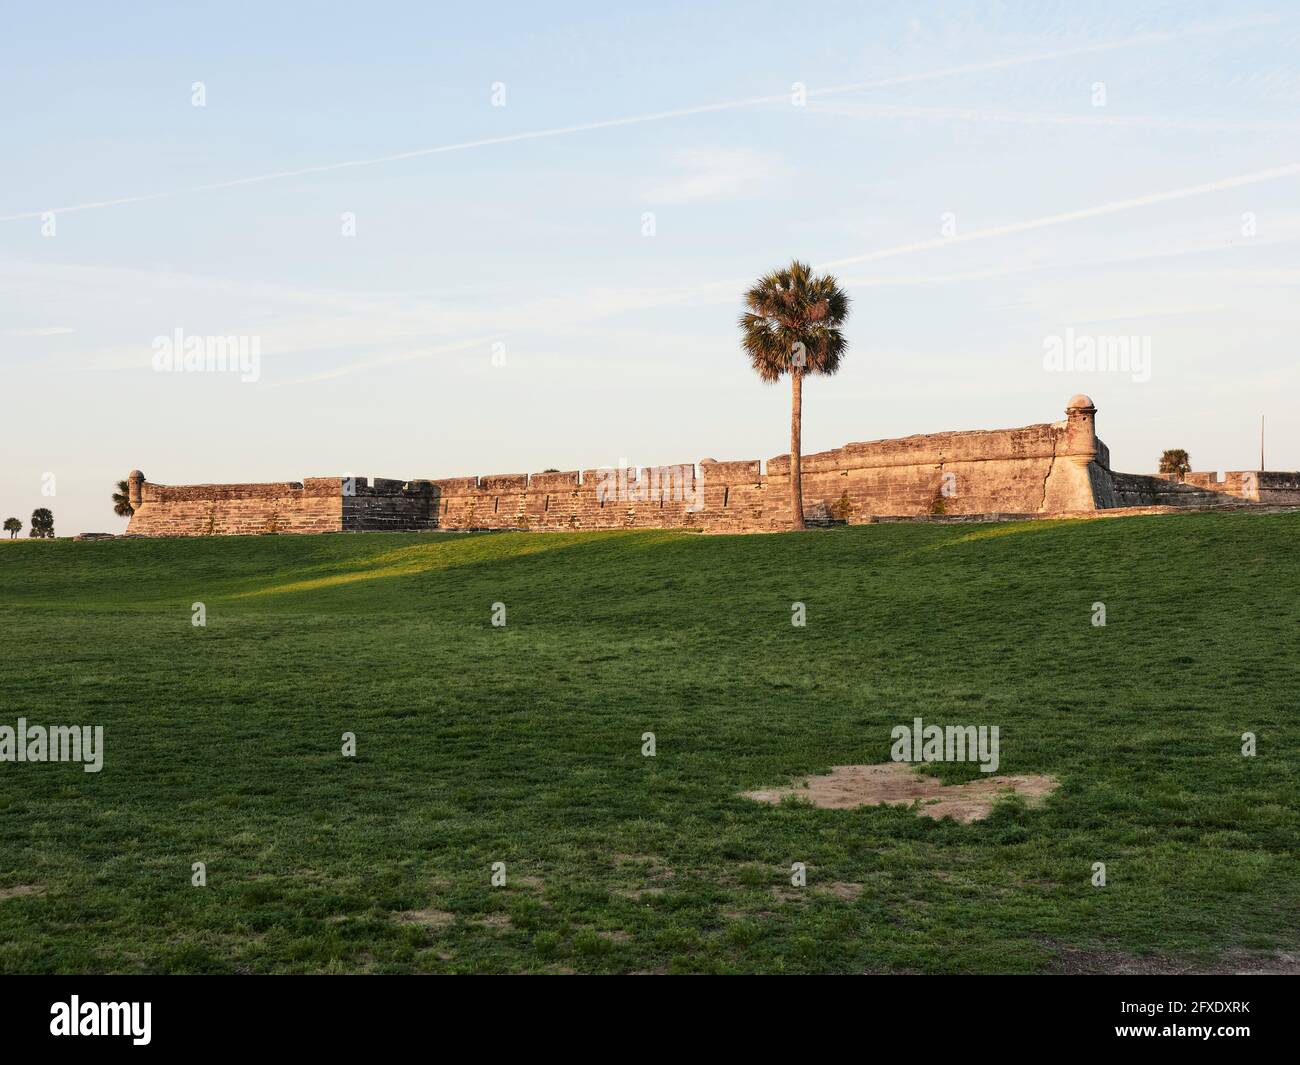 Das Castillo de San Marcos (Spanisch für „St. Mark's Castle') eine spanische Festung aus dem 16. Jahrhundert, die die Mantanzas Bay in St. Augustine, Florida, USA, bewacht. Stockfoto